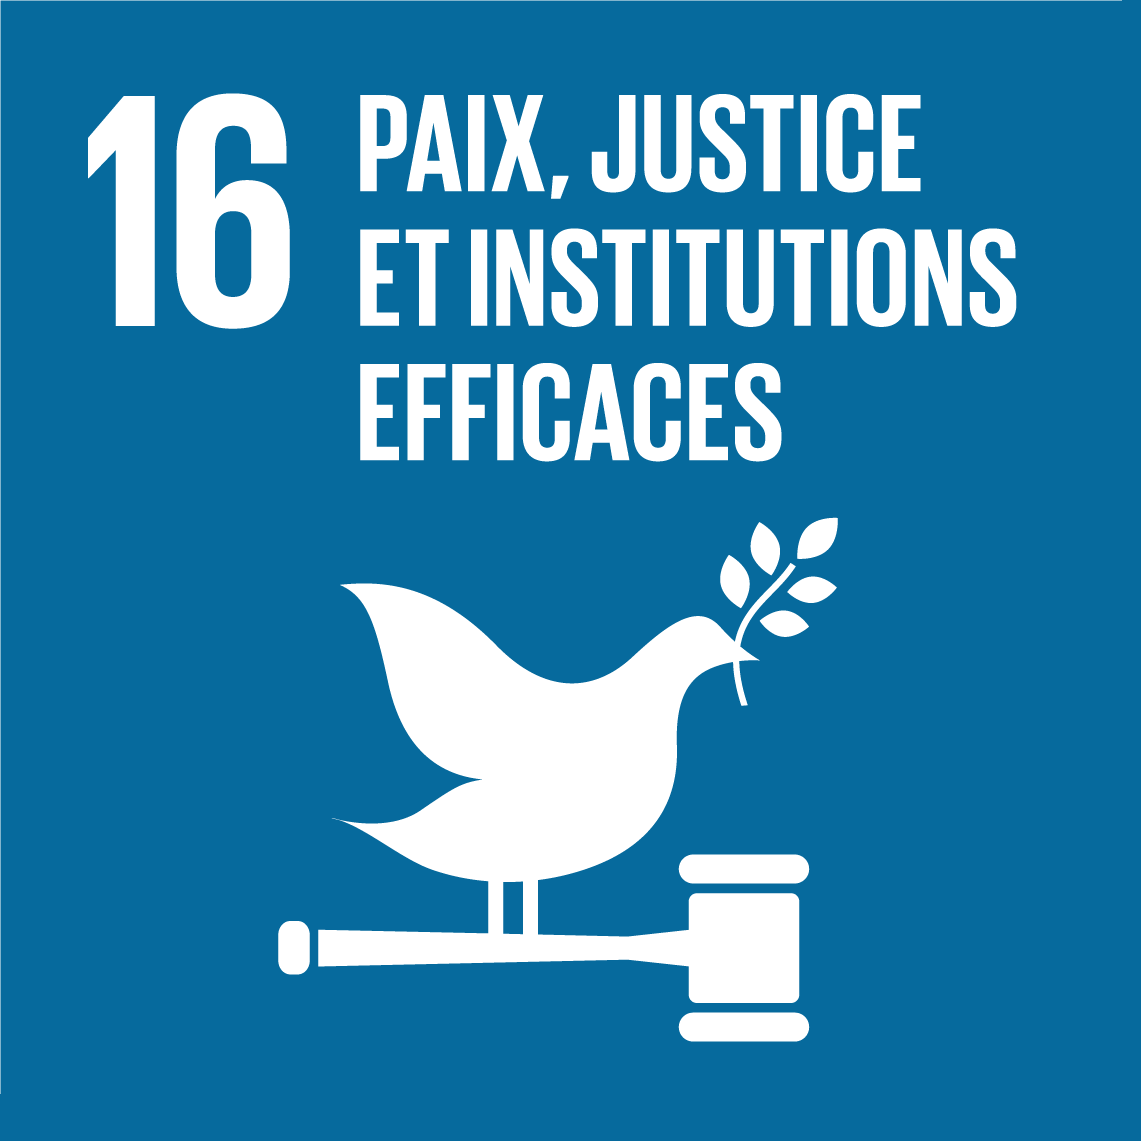 16 Paix, justice et institutions efficases